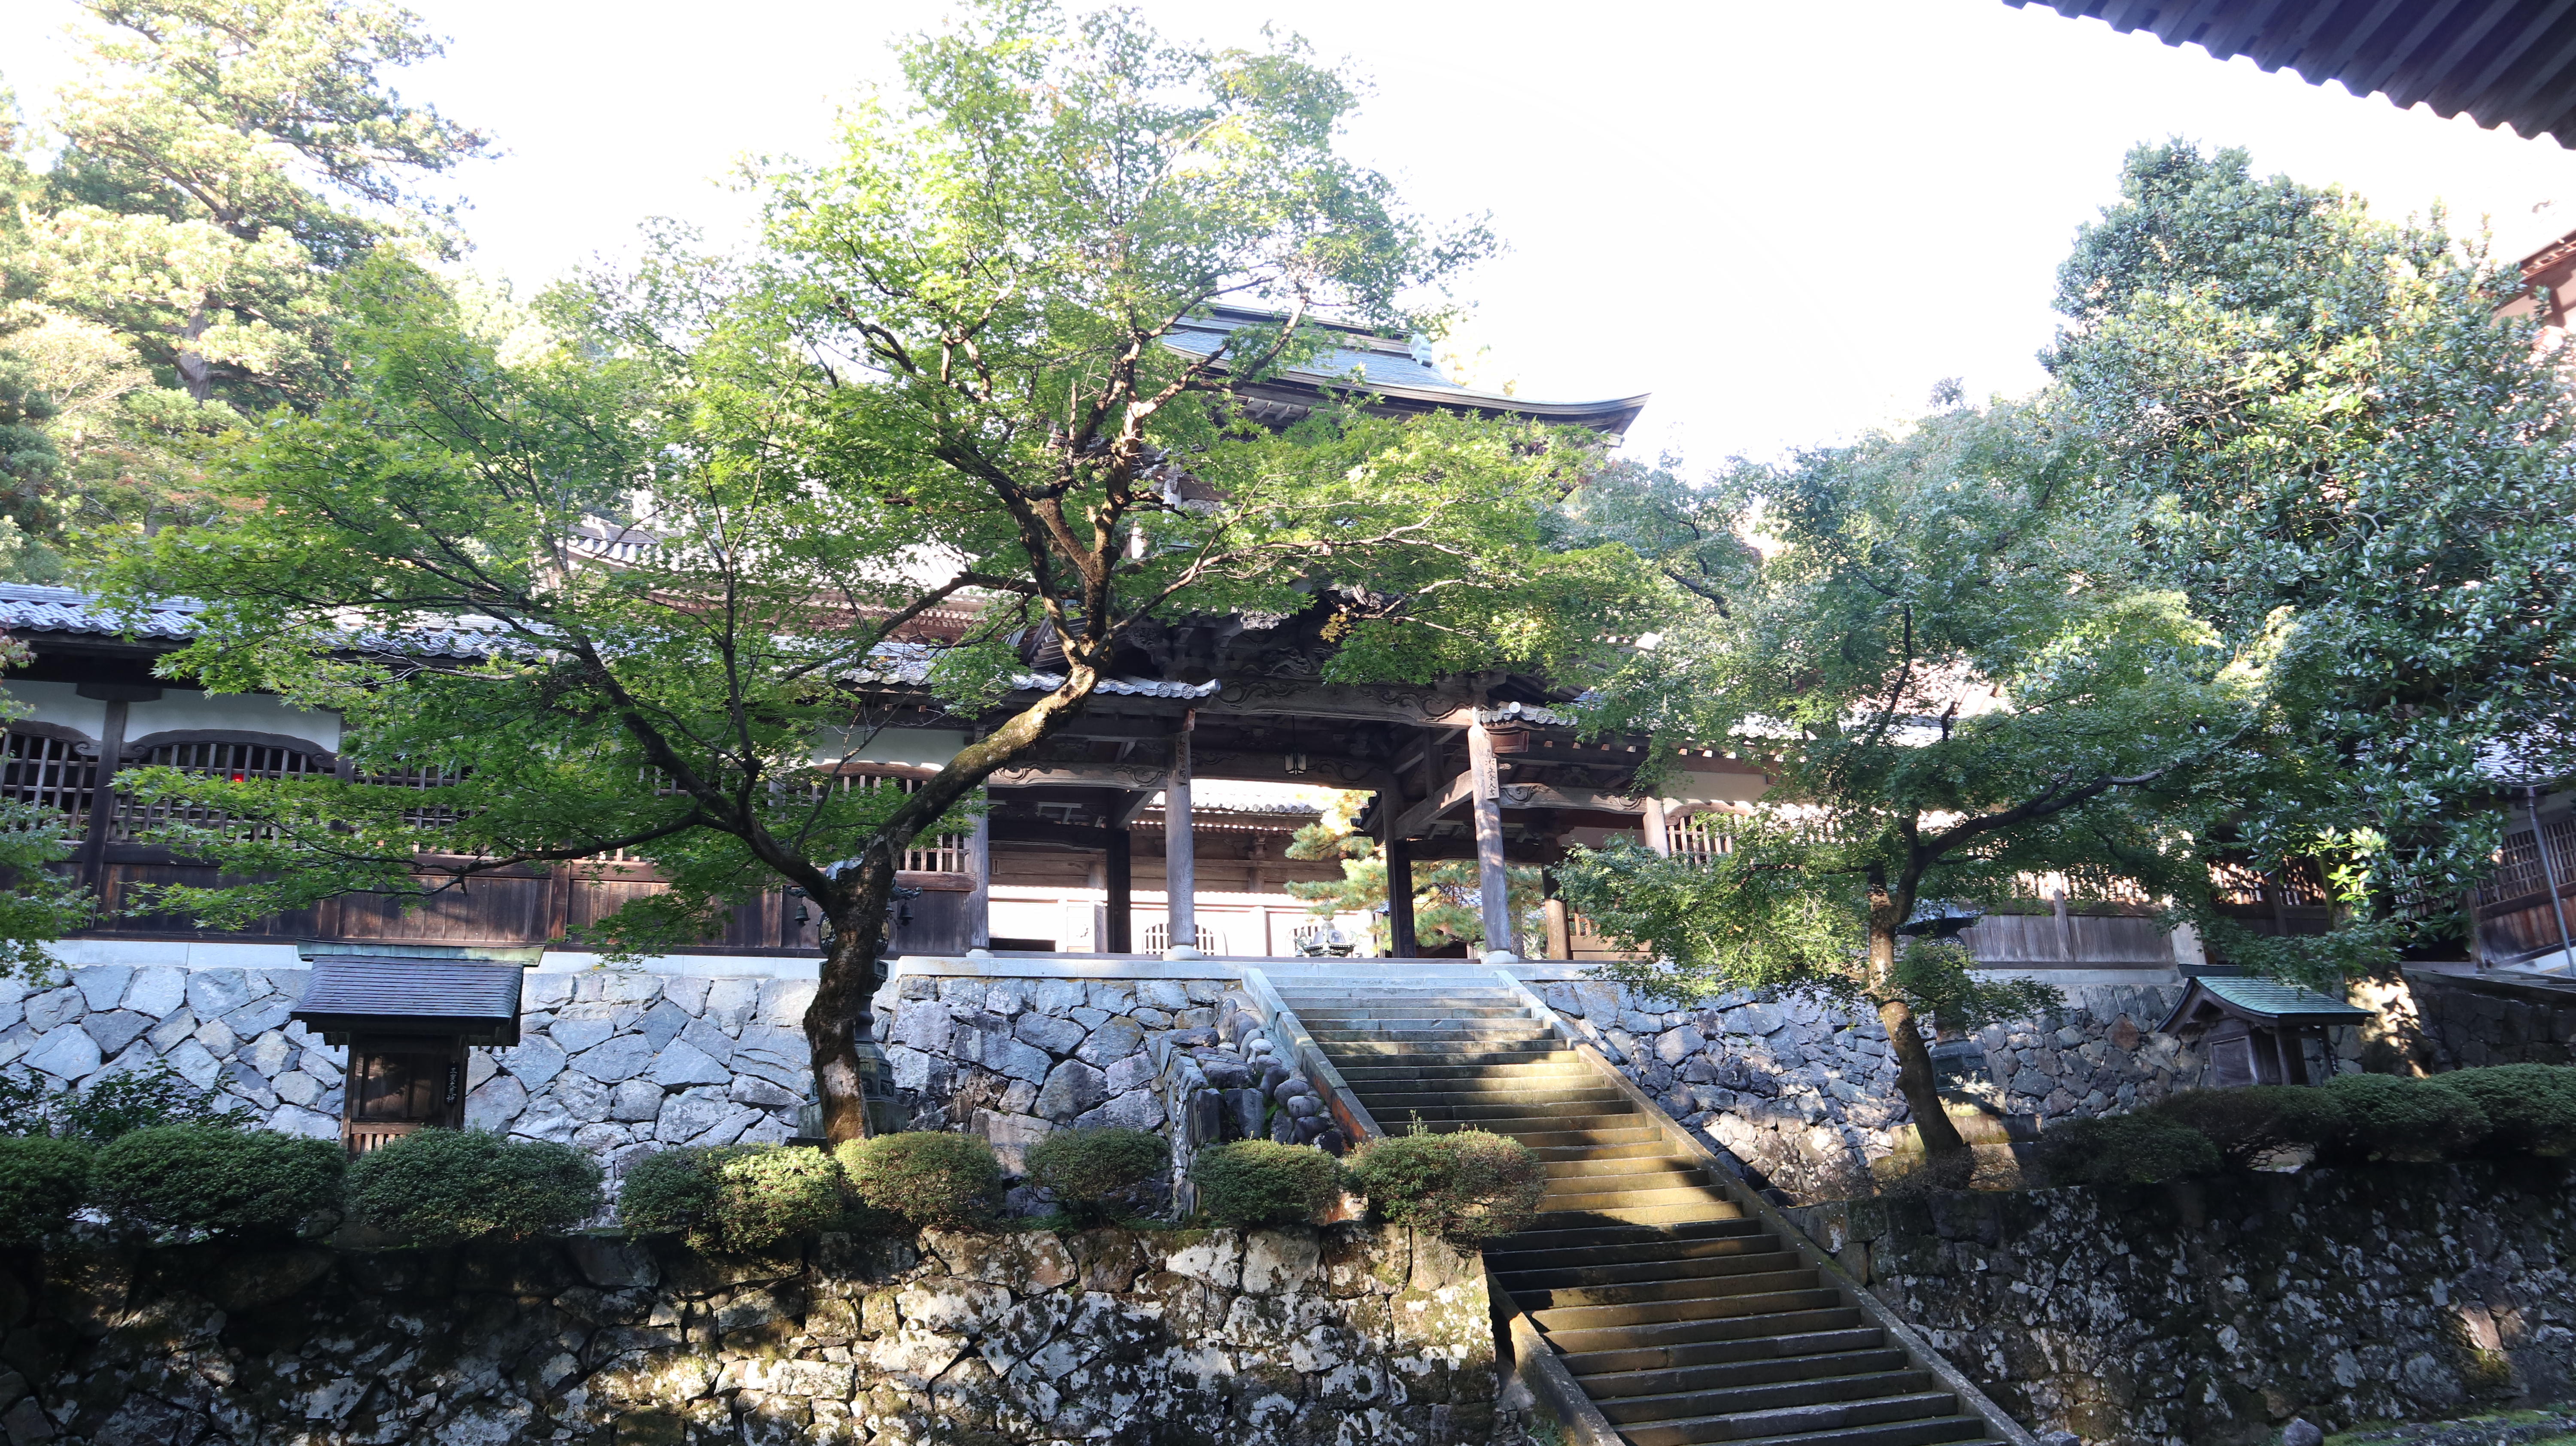 Find Your Zen in Fukui